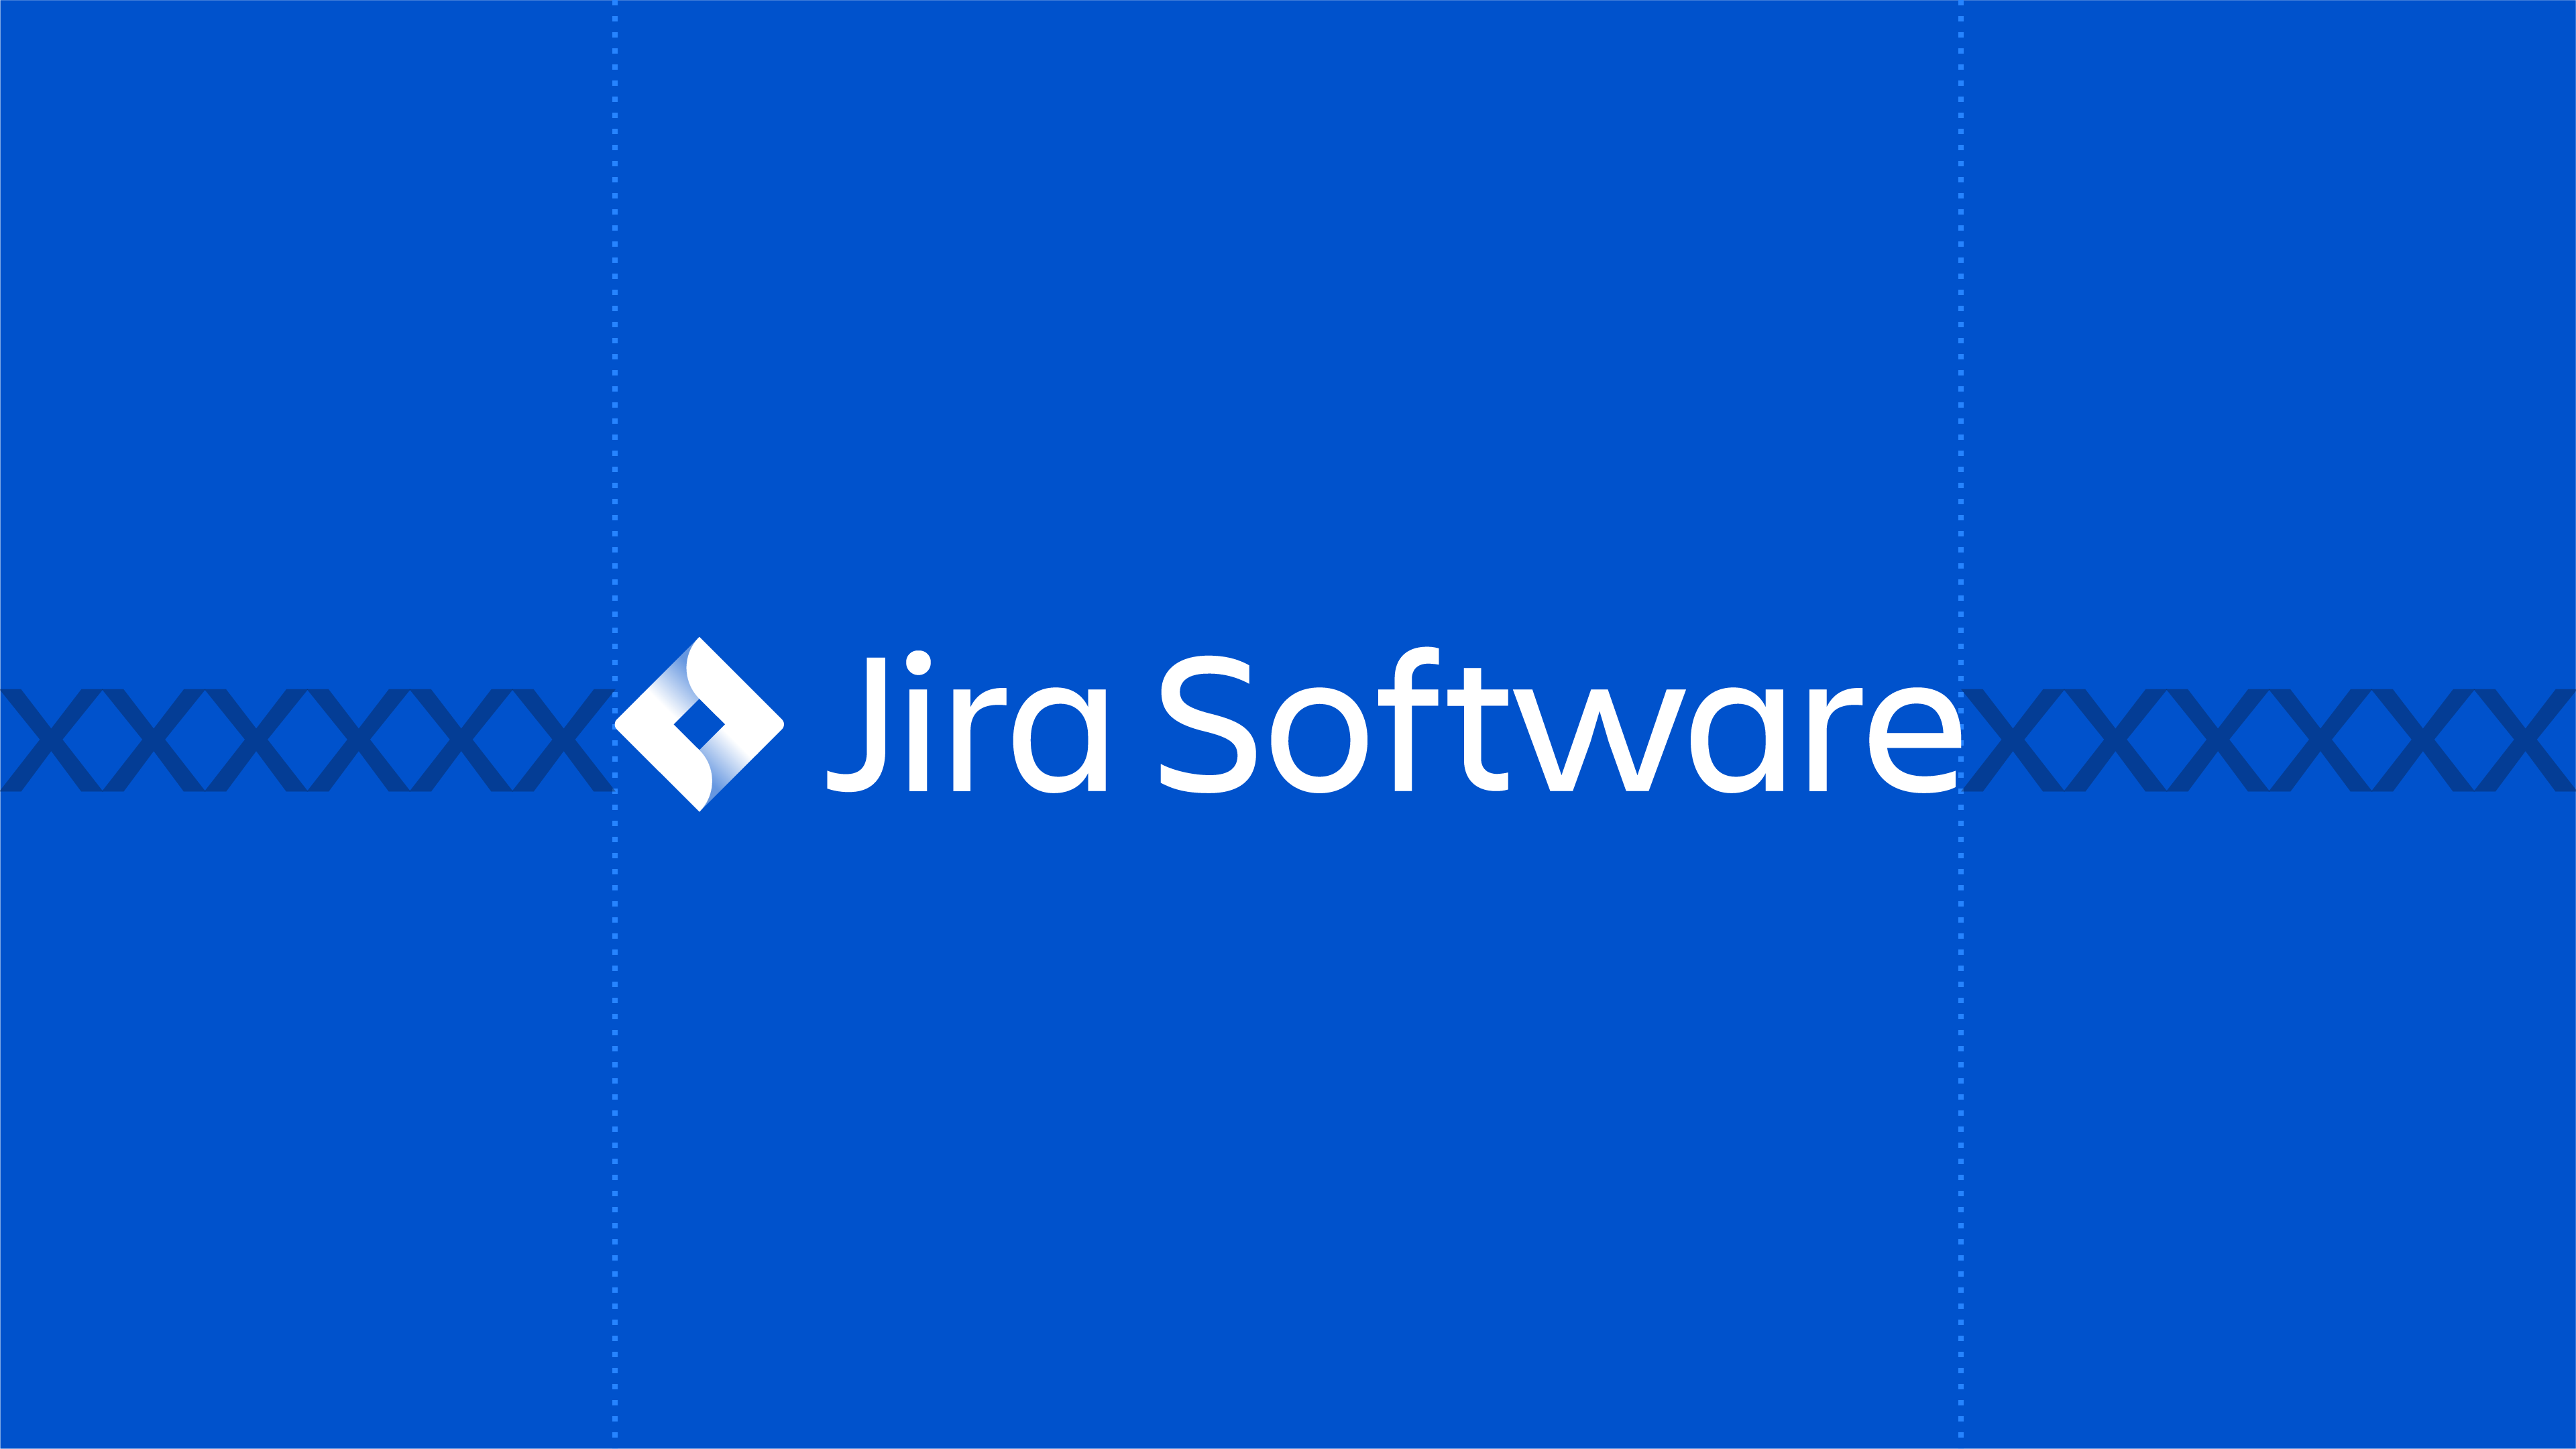 jira ideal logo clearance